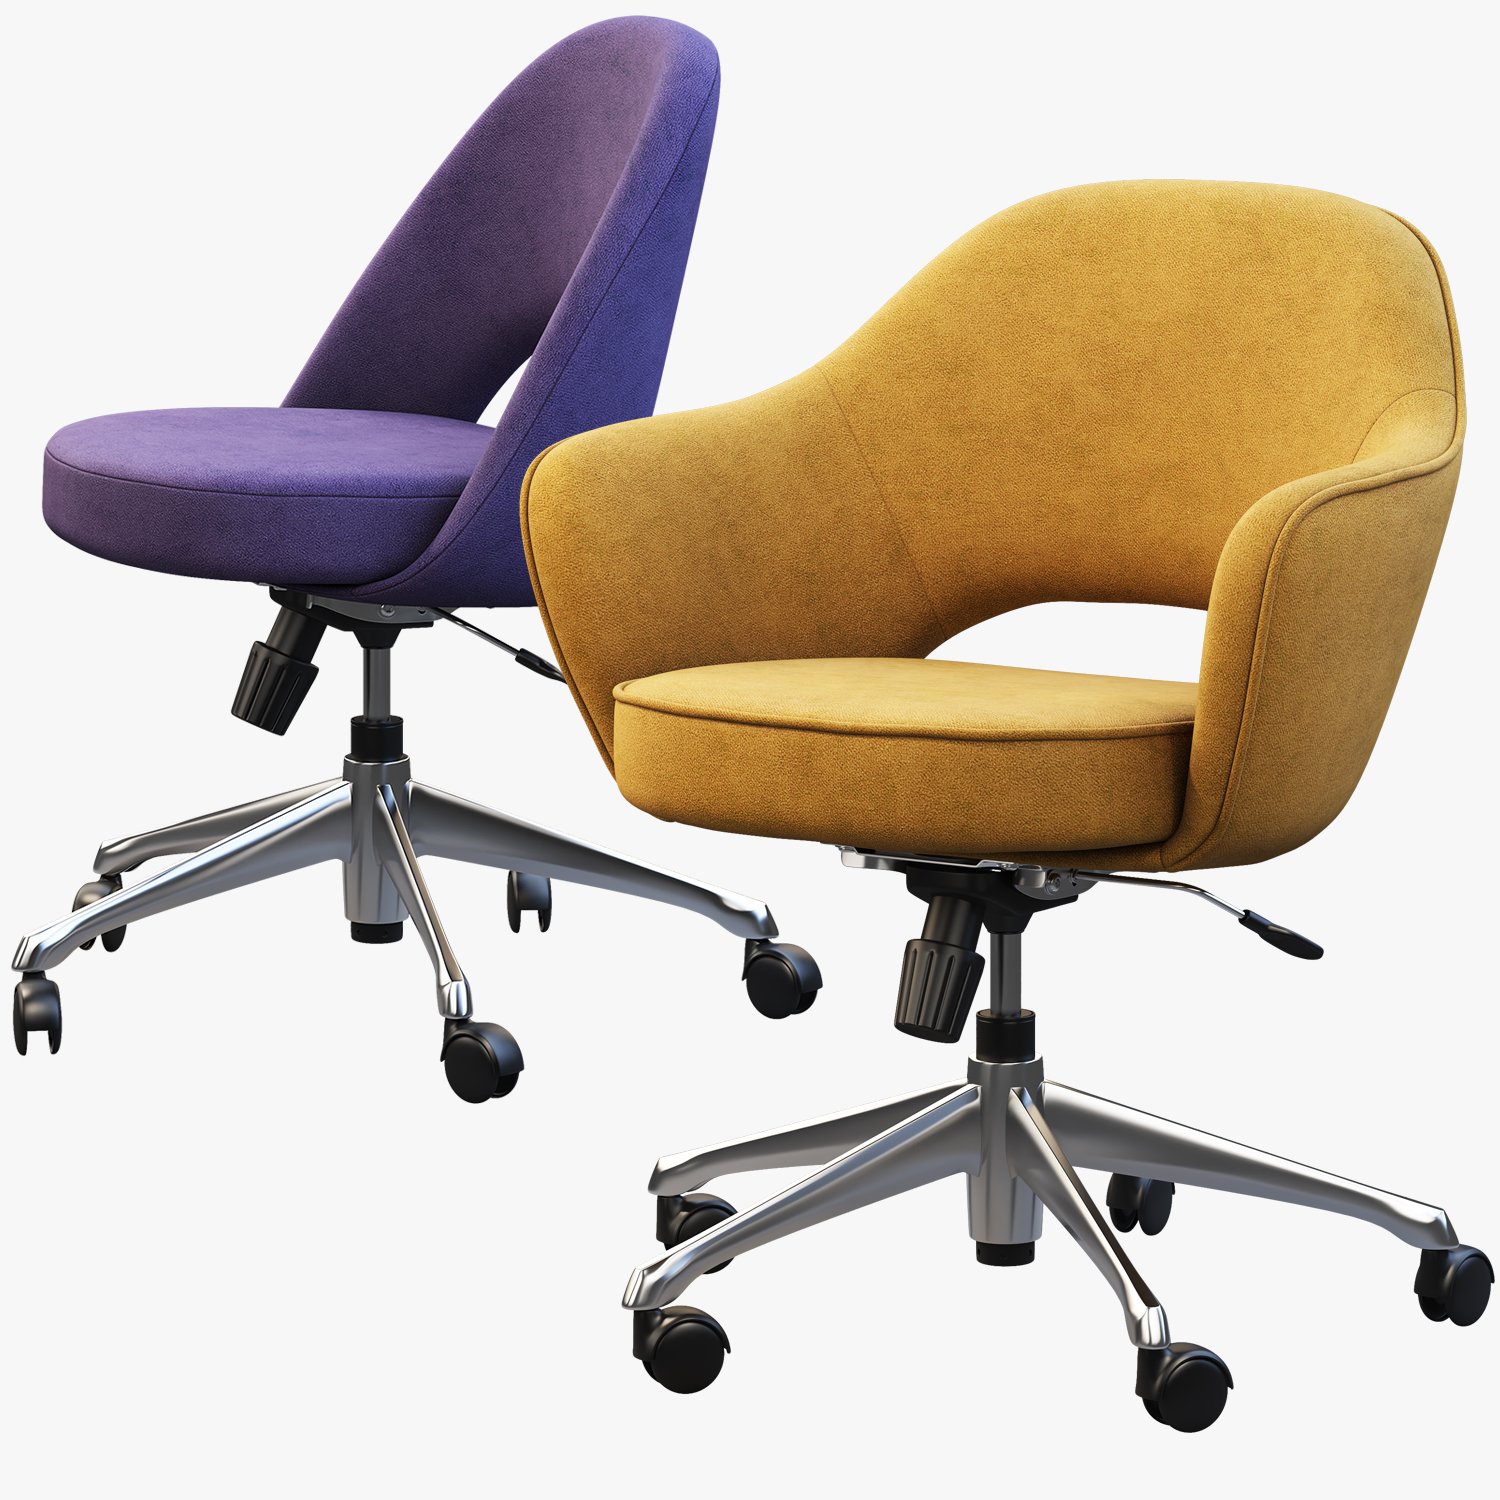 3ds Max модель офисного кресла